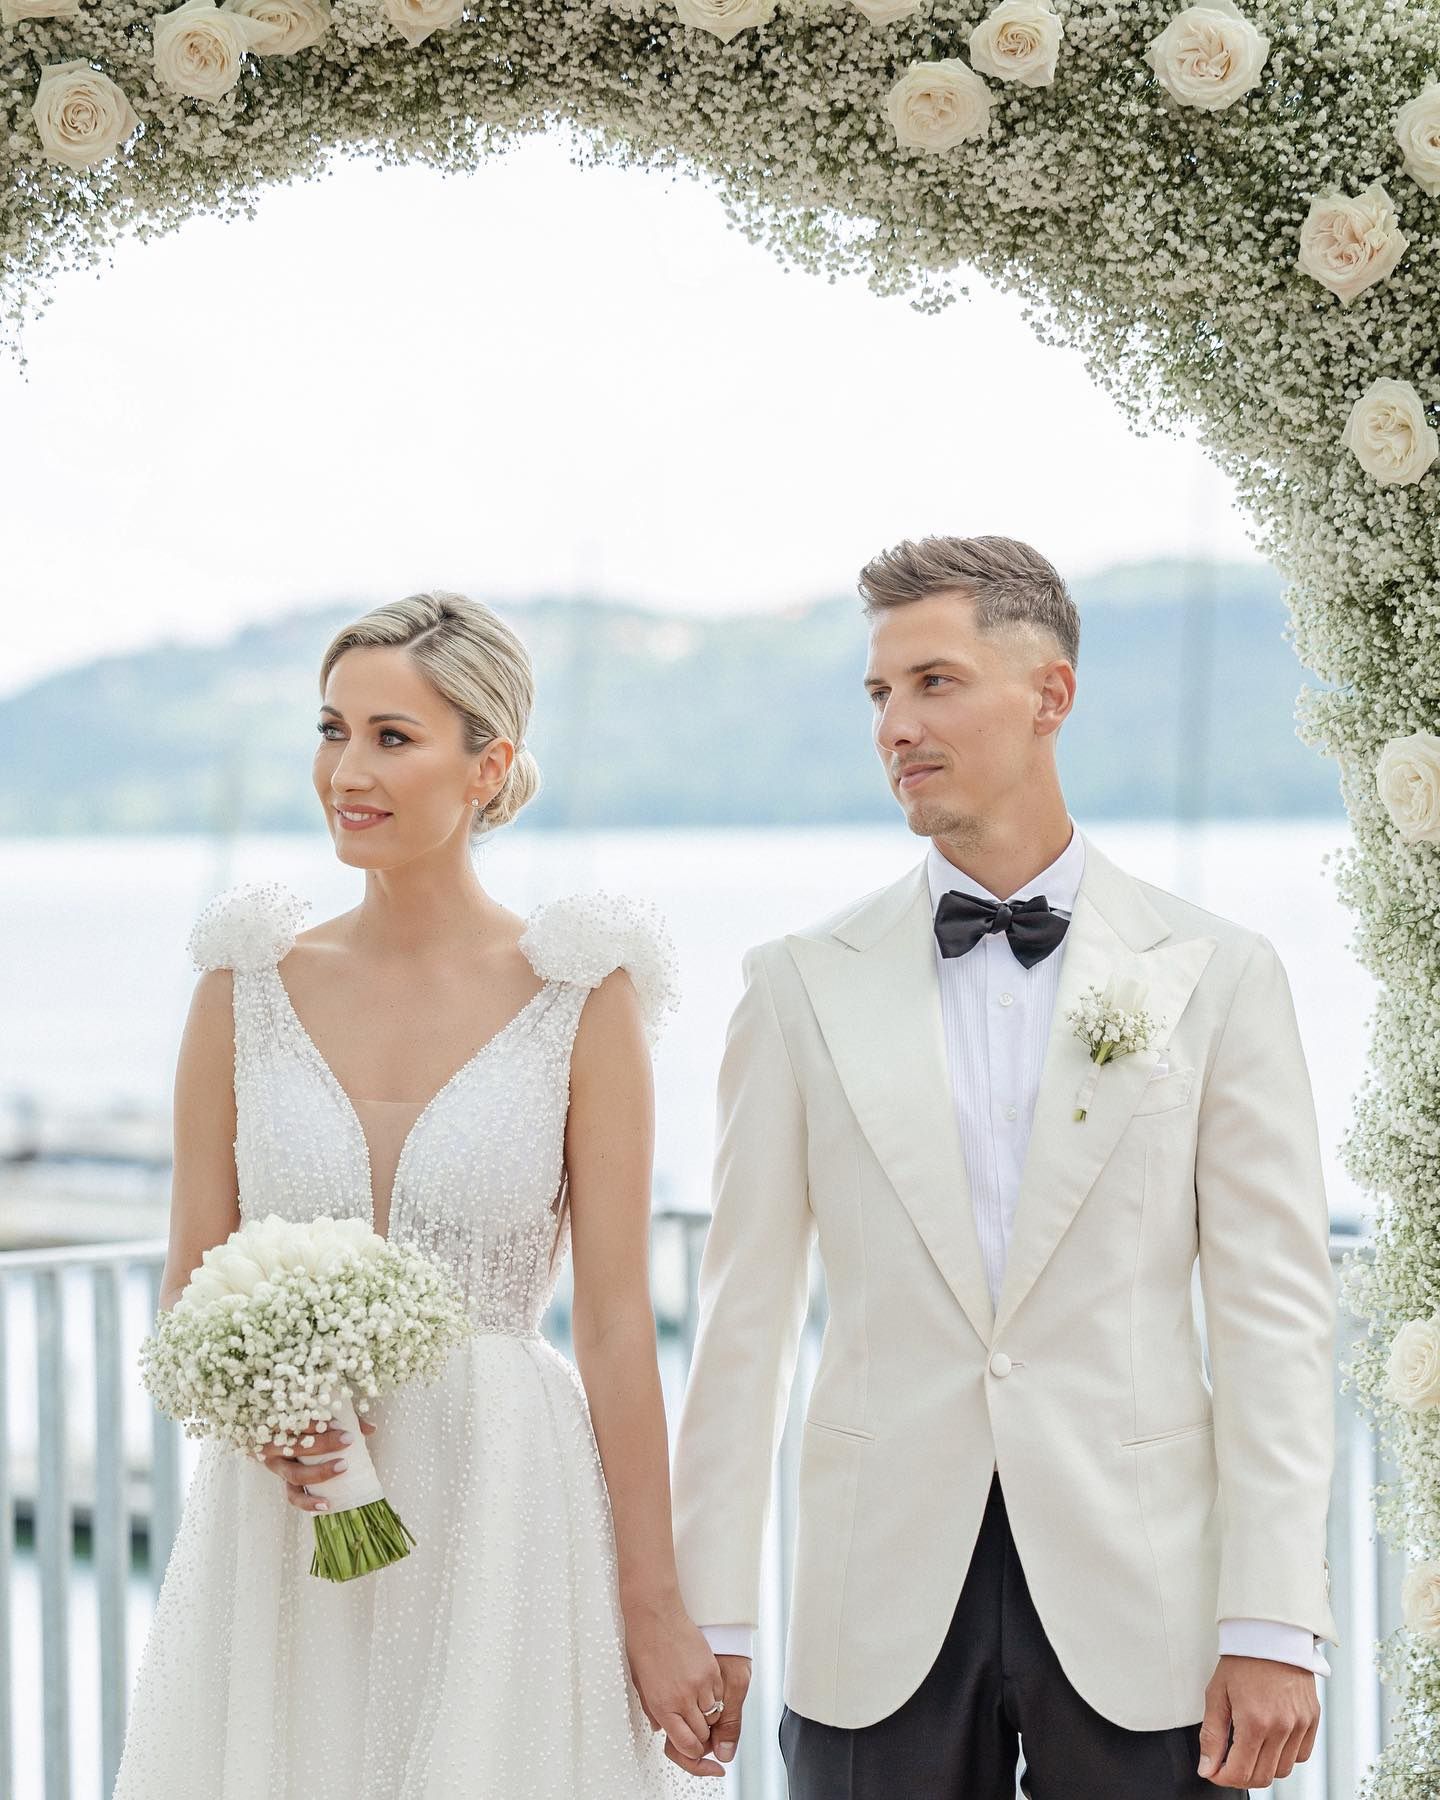 Németh Krisztián megnősült a nyári szünetben (Fotó: Instagram/Németh Krisztián)